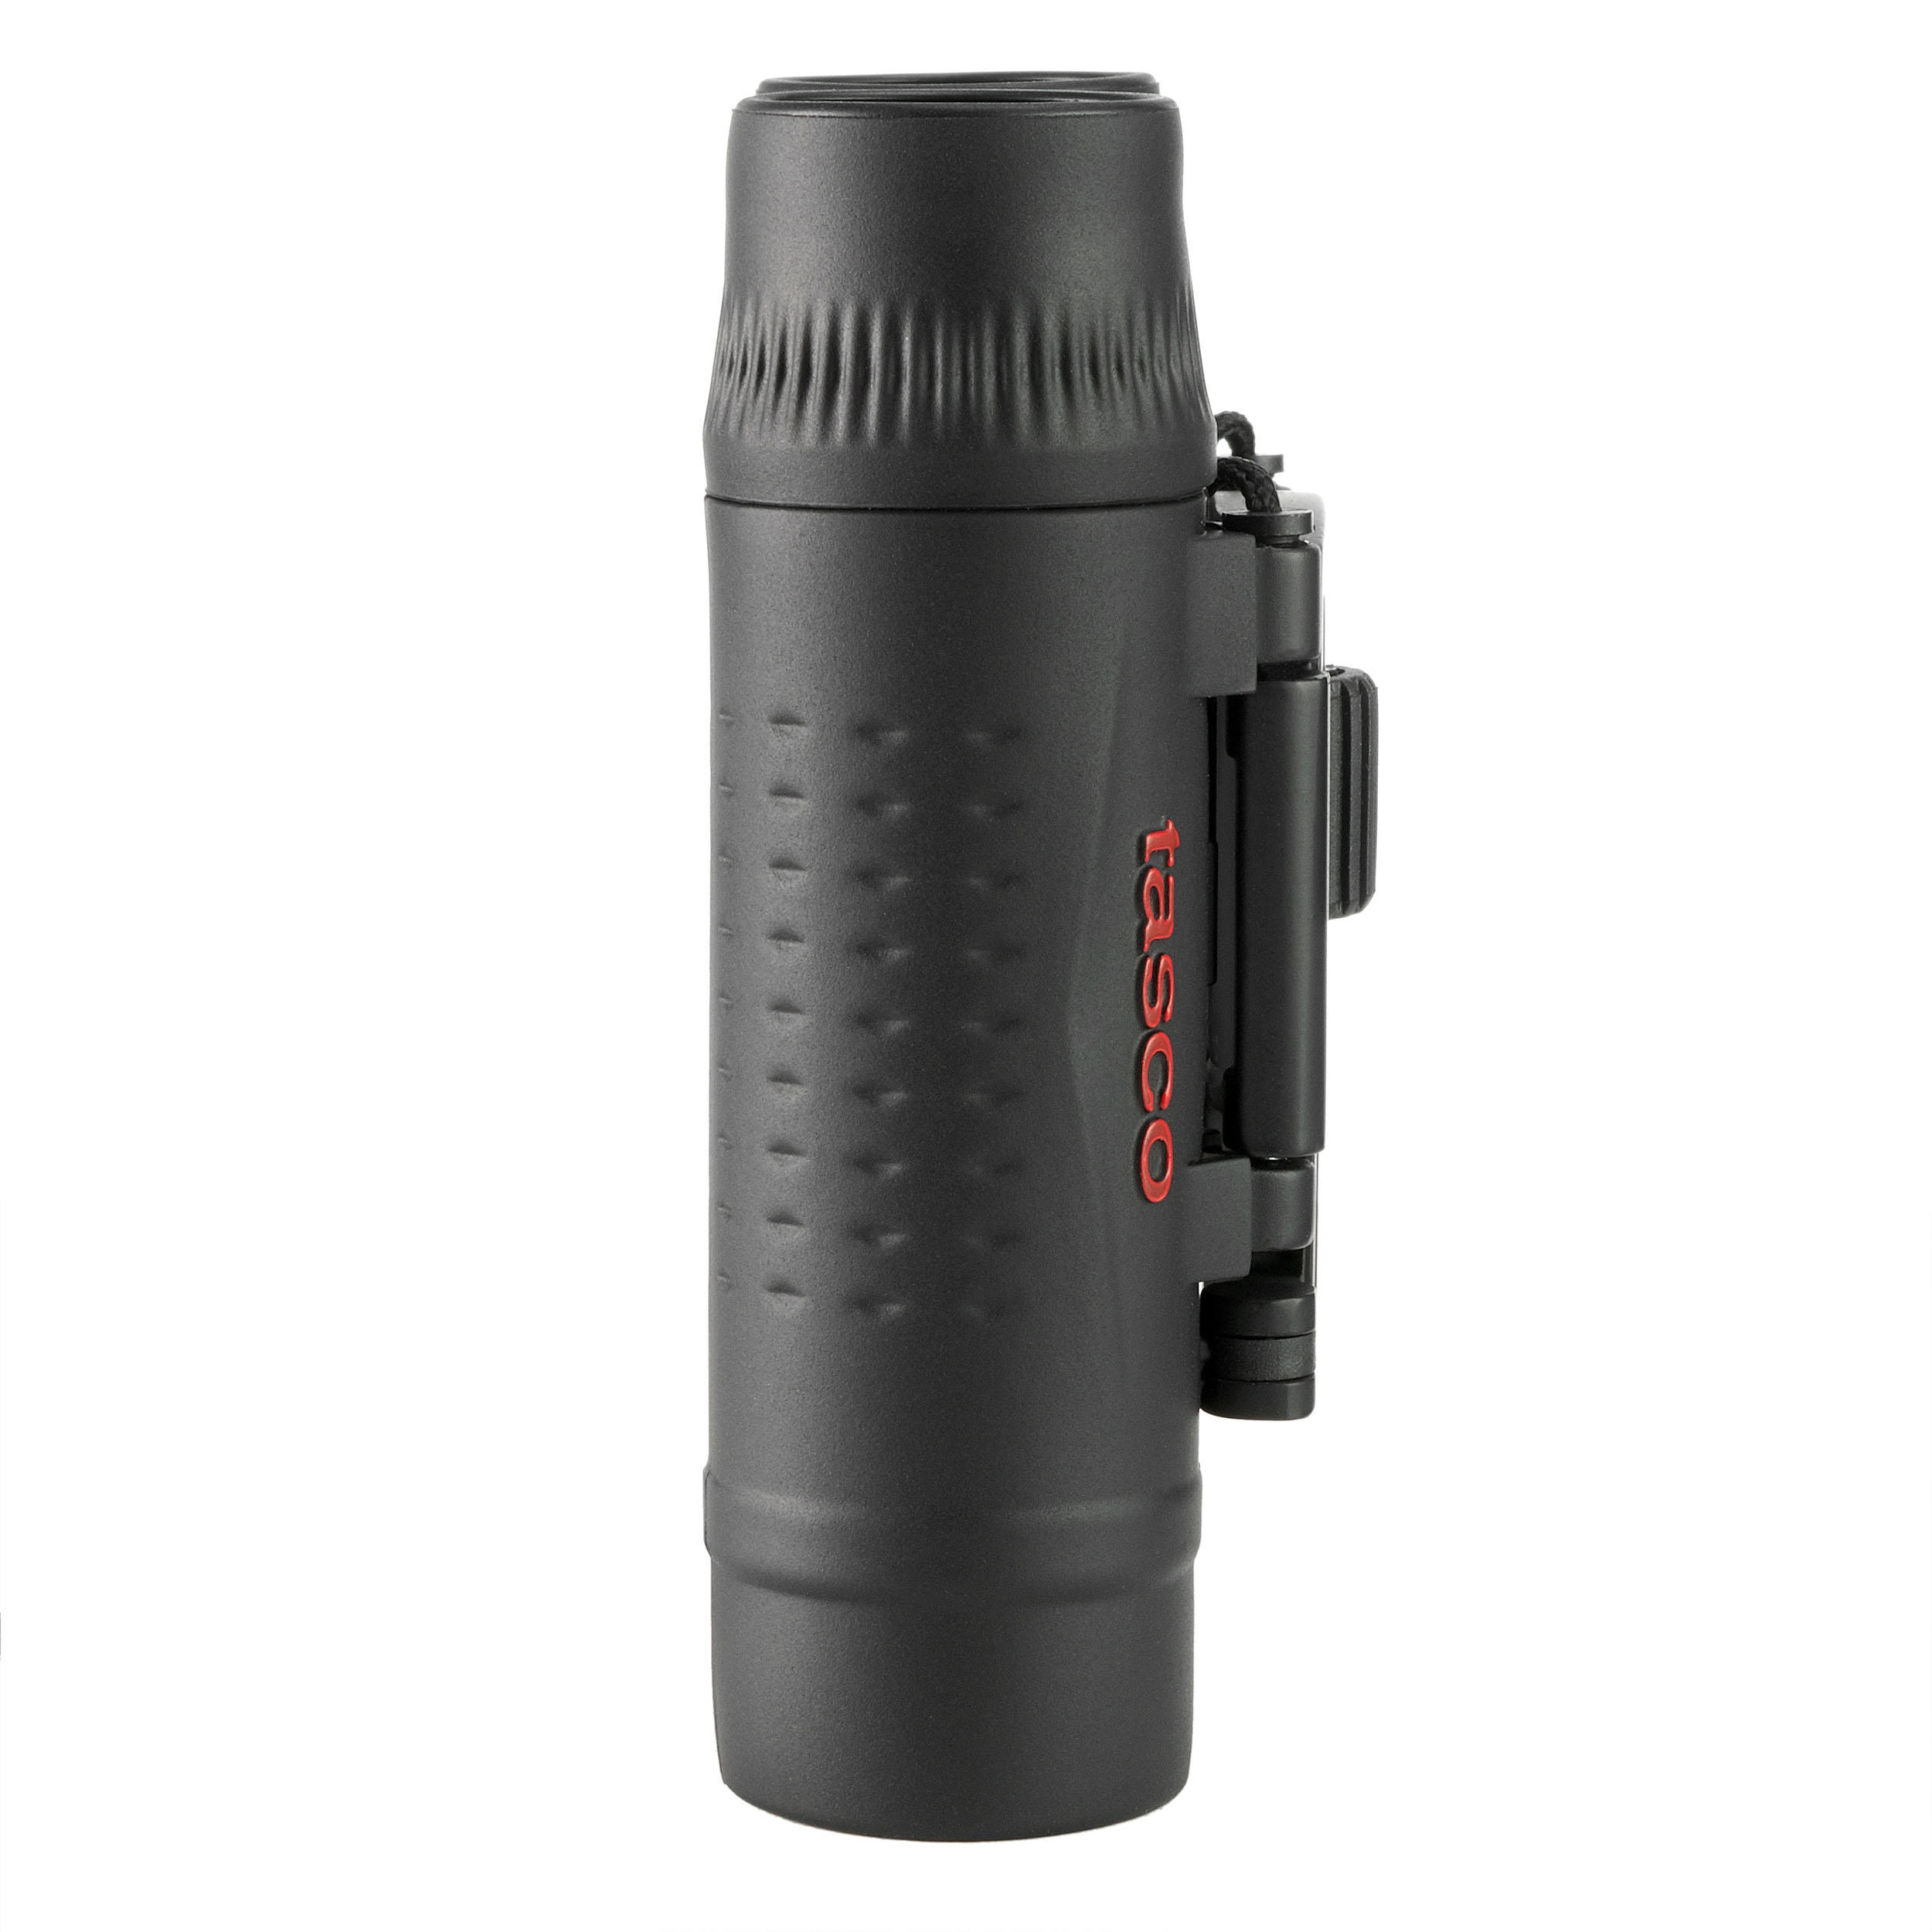 Adult Adjustable Hiking Binoculars - TASCO Essential - x10 Magnification 5/9